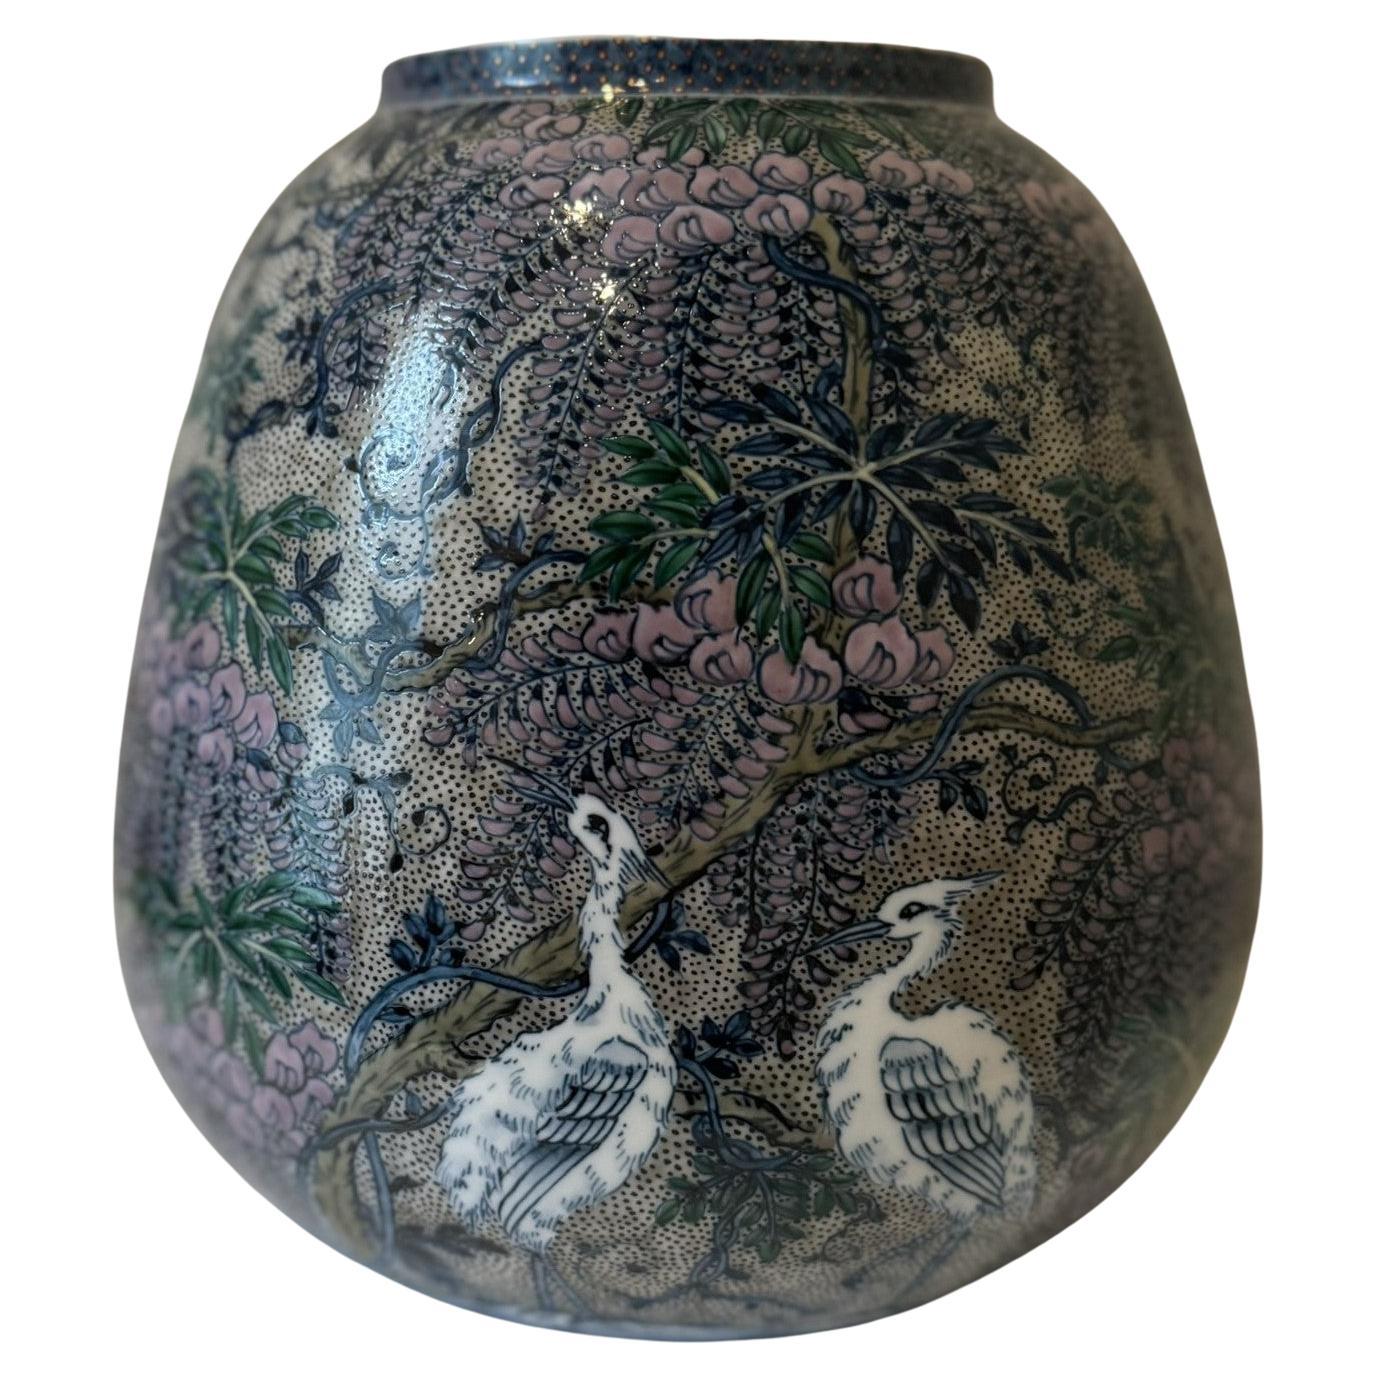 Außergewöhnliche dekorative japanische Vase aus zeitgenössischem Porzellan, extrem aufwendig handbemalt in Rosa, Blau und Grün auf einem atemberaubend geformten Porzellankörper, ein signiertes Meisterwerk eines Porzellanmeisters aus der Region Imari